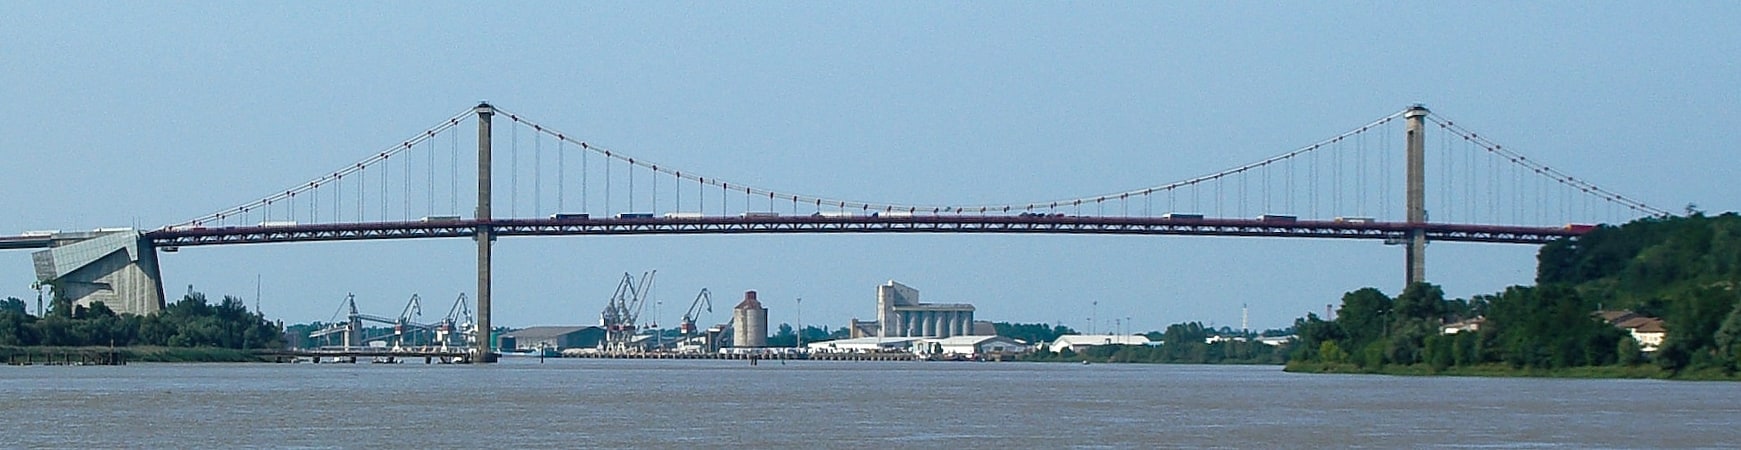 Pont suspendu à Bordeaux, France